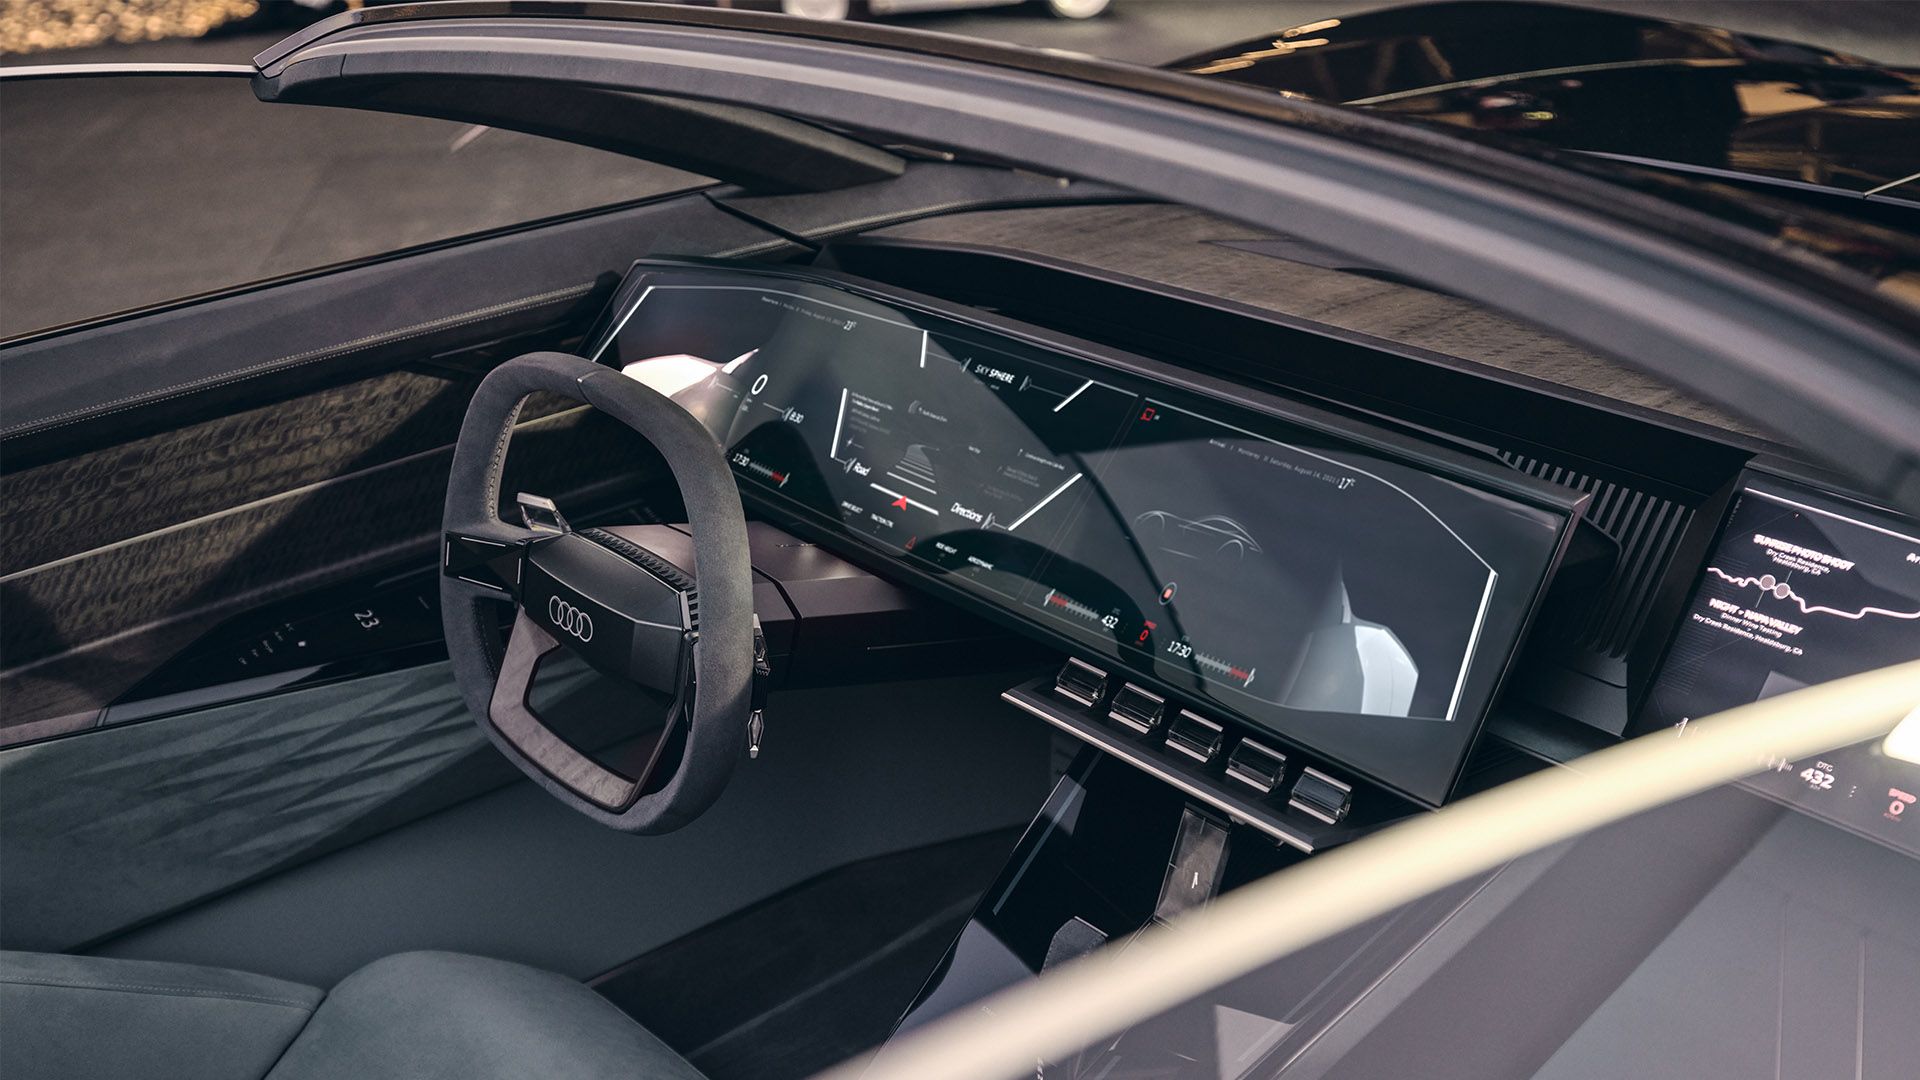 Audi skysphere concept otomobilin “Sports” modunda sürücü koltuğu, pedallar, direksiyon simidi ve monitörlerin görünümü.